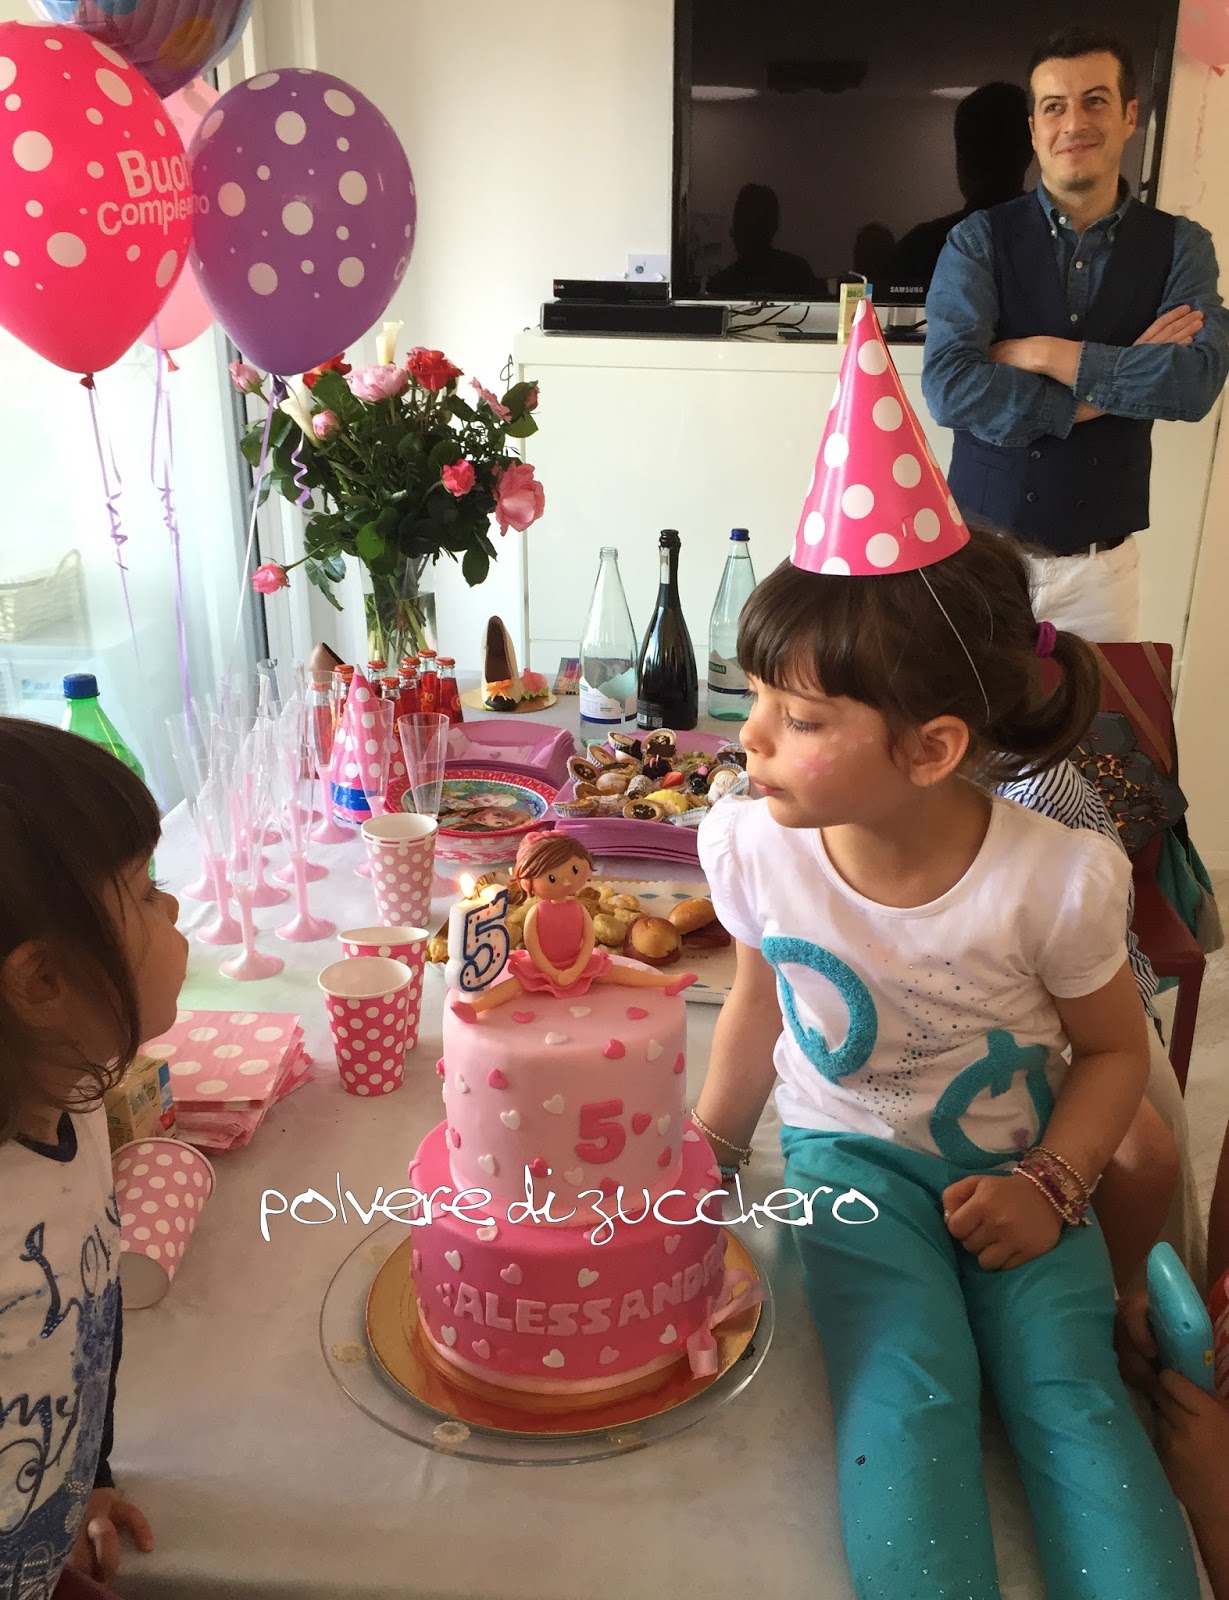 compleanno bimba torta decorata due piani cake design ballerina pasta di zucchero rosa polvere di zucchero